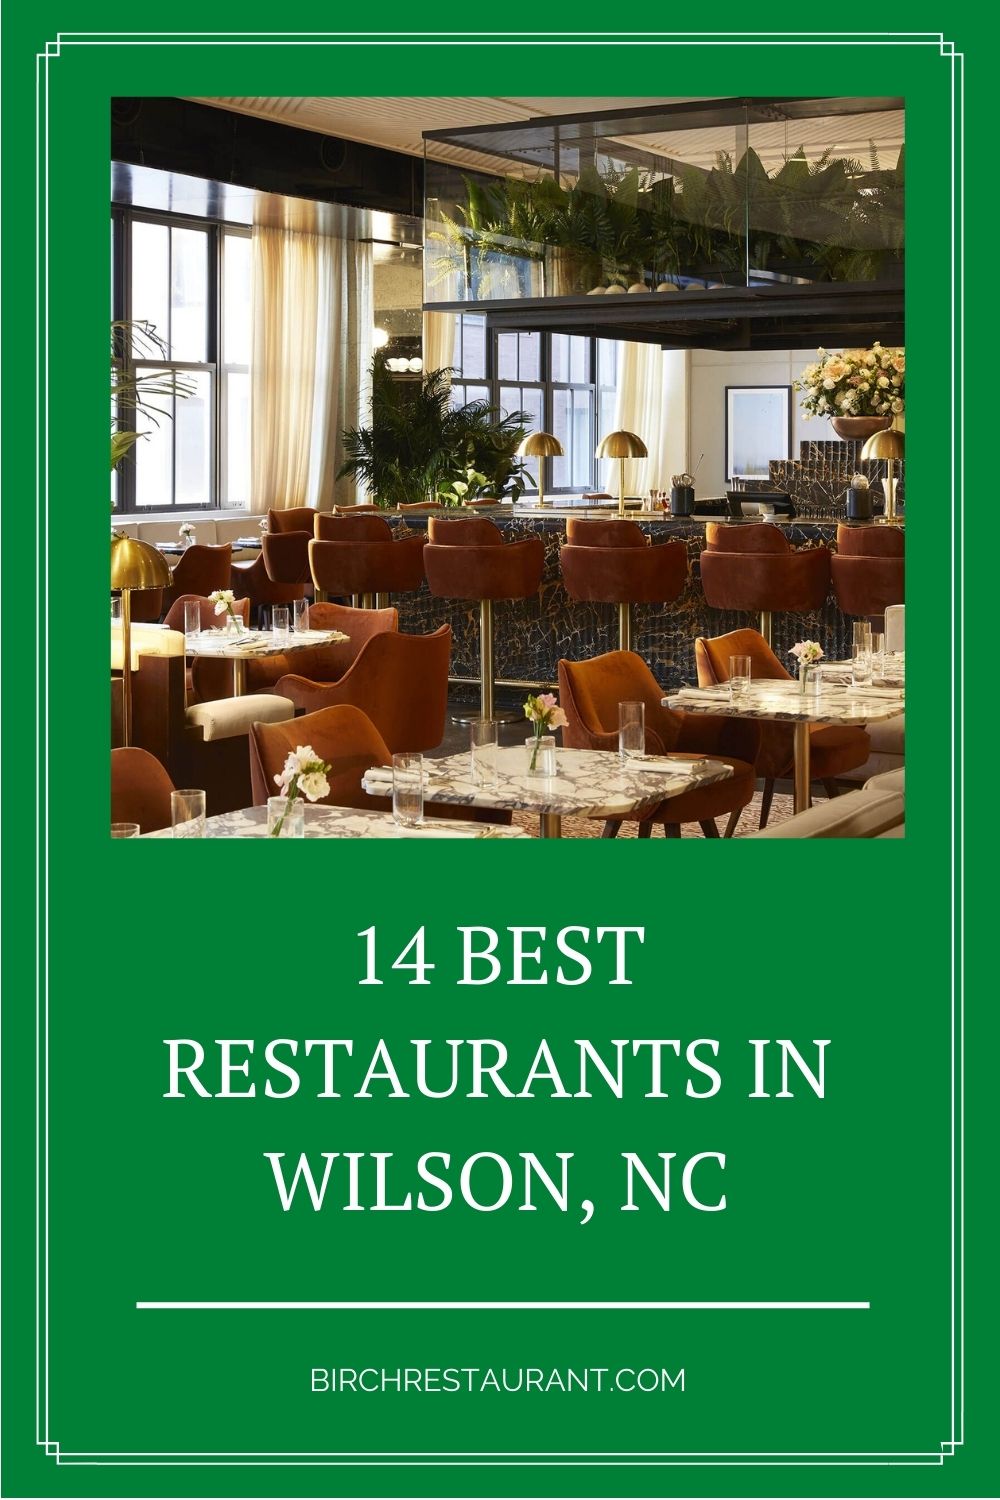 Best Restaurants in Wilson